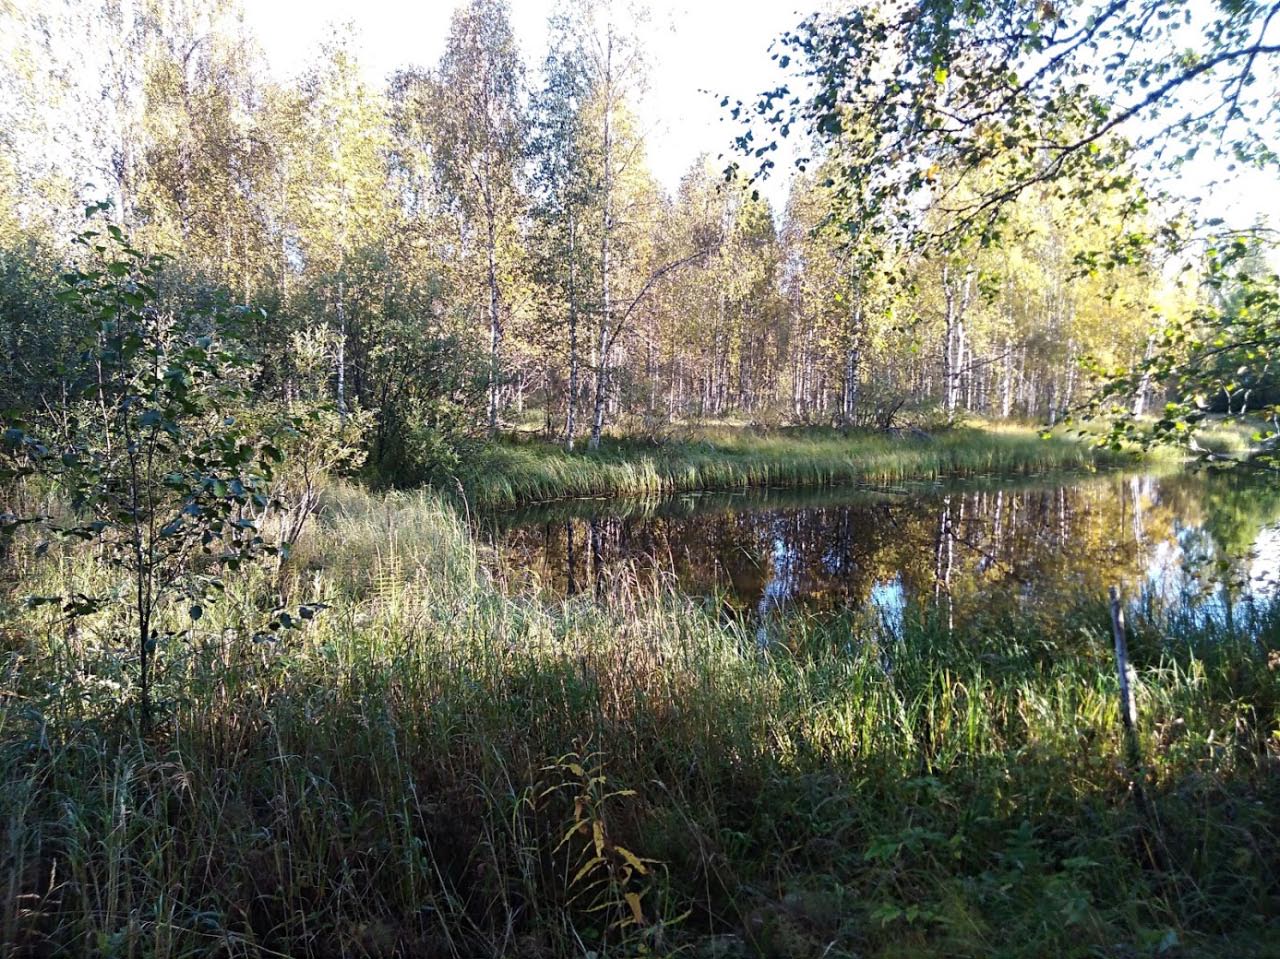 Kuva: Jokiuomaa ja saareen menevä kangas lounaasta. K.H. Renlundin museon kokoelmat. CC BY 4.0 Lauri Skantsi 15.9.2020